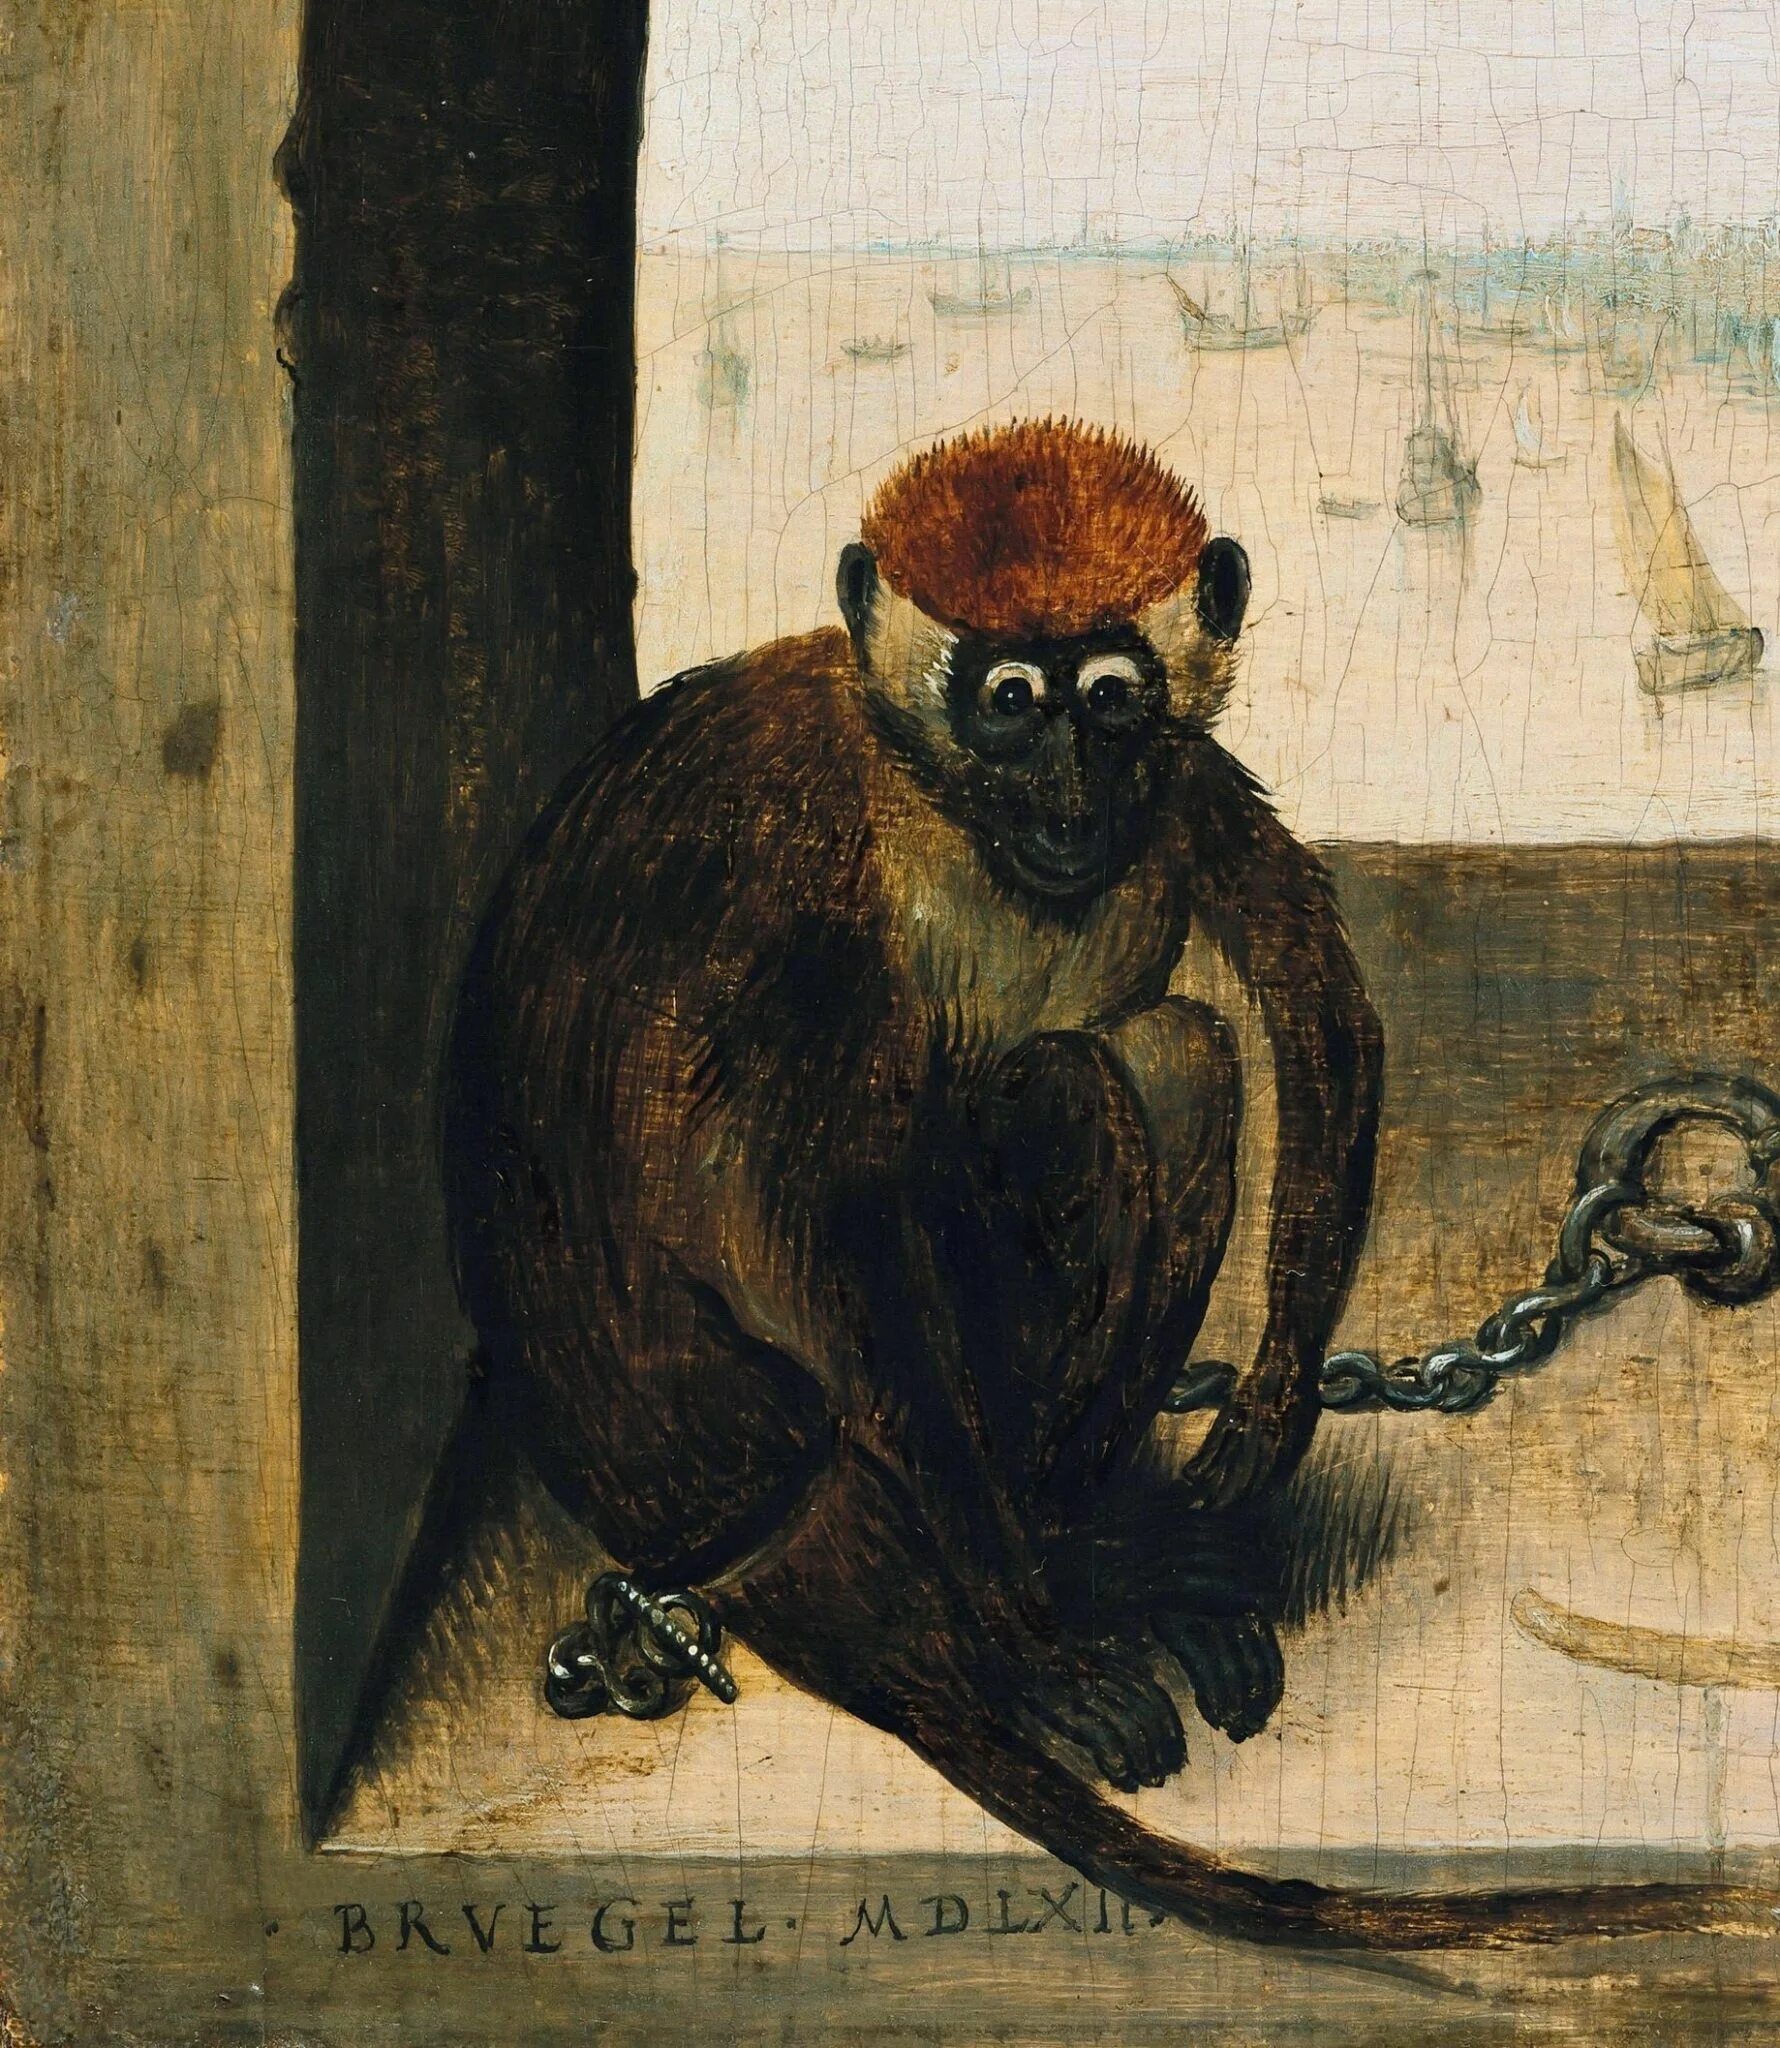 Обезьяны спб. Питер брейгель обезьяны. Питер брейгель старший обезьяны. Питер брейгель две обезьяны. "Две обезьянки", Питер брейгель старший.1562..